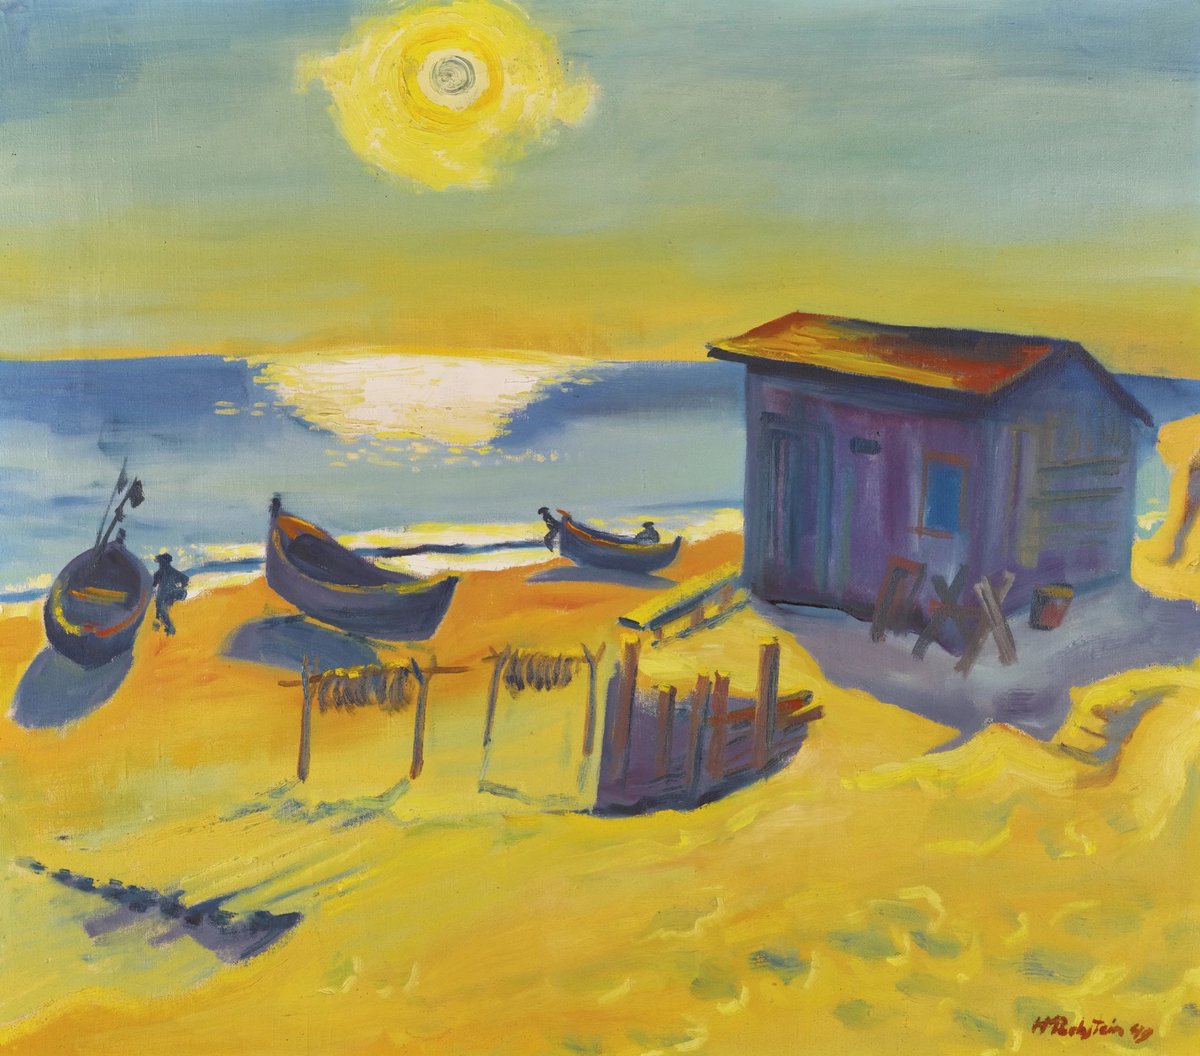 Gününüz aydınlık olsun☀️

Max Pechstein

‘Güneş Geri Döndü, 1949’